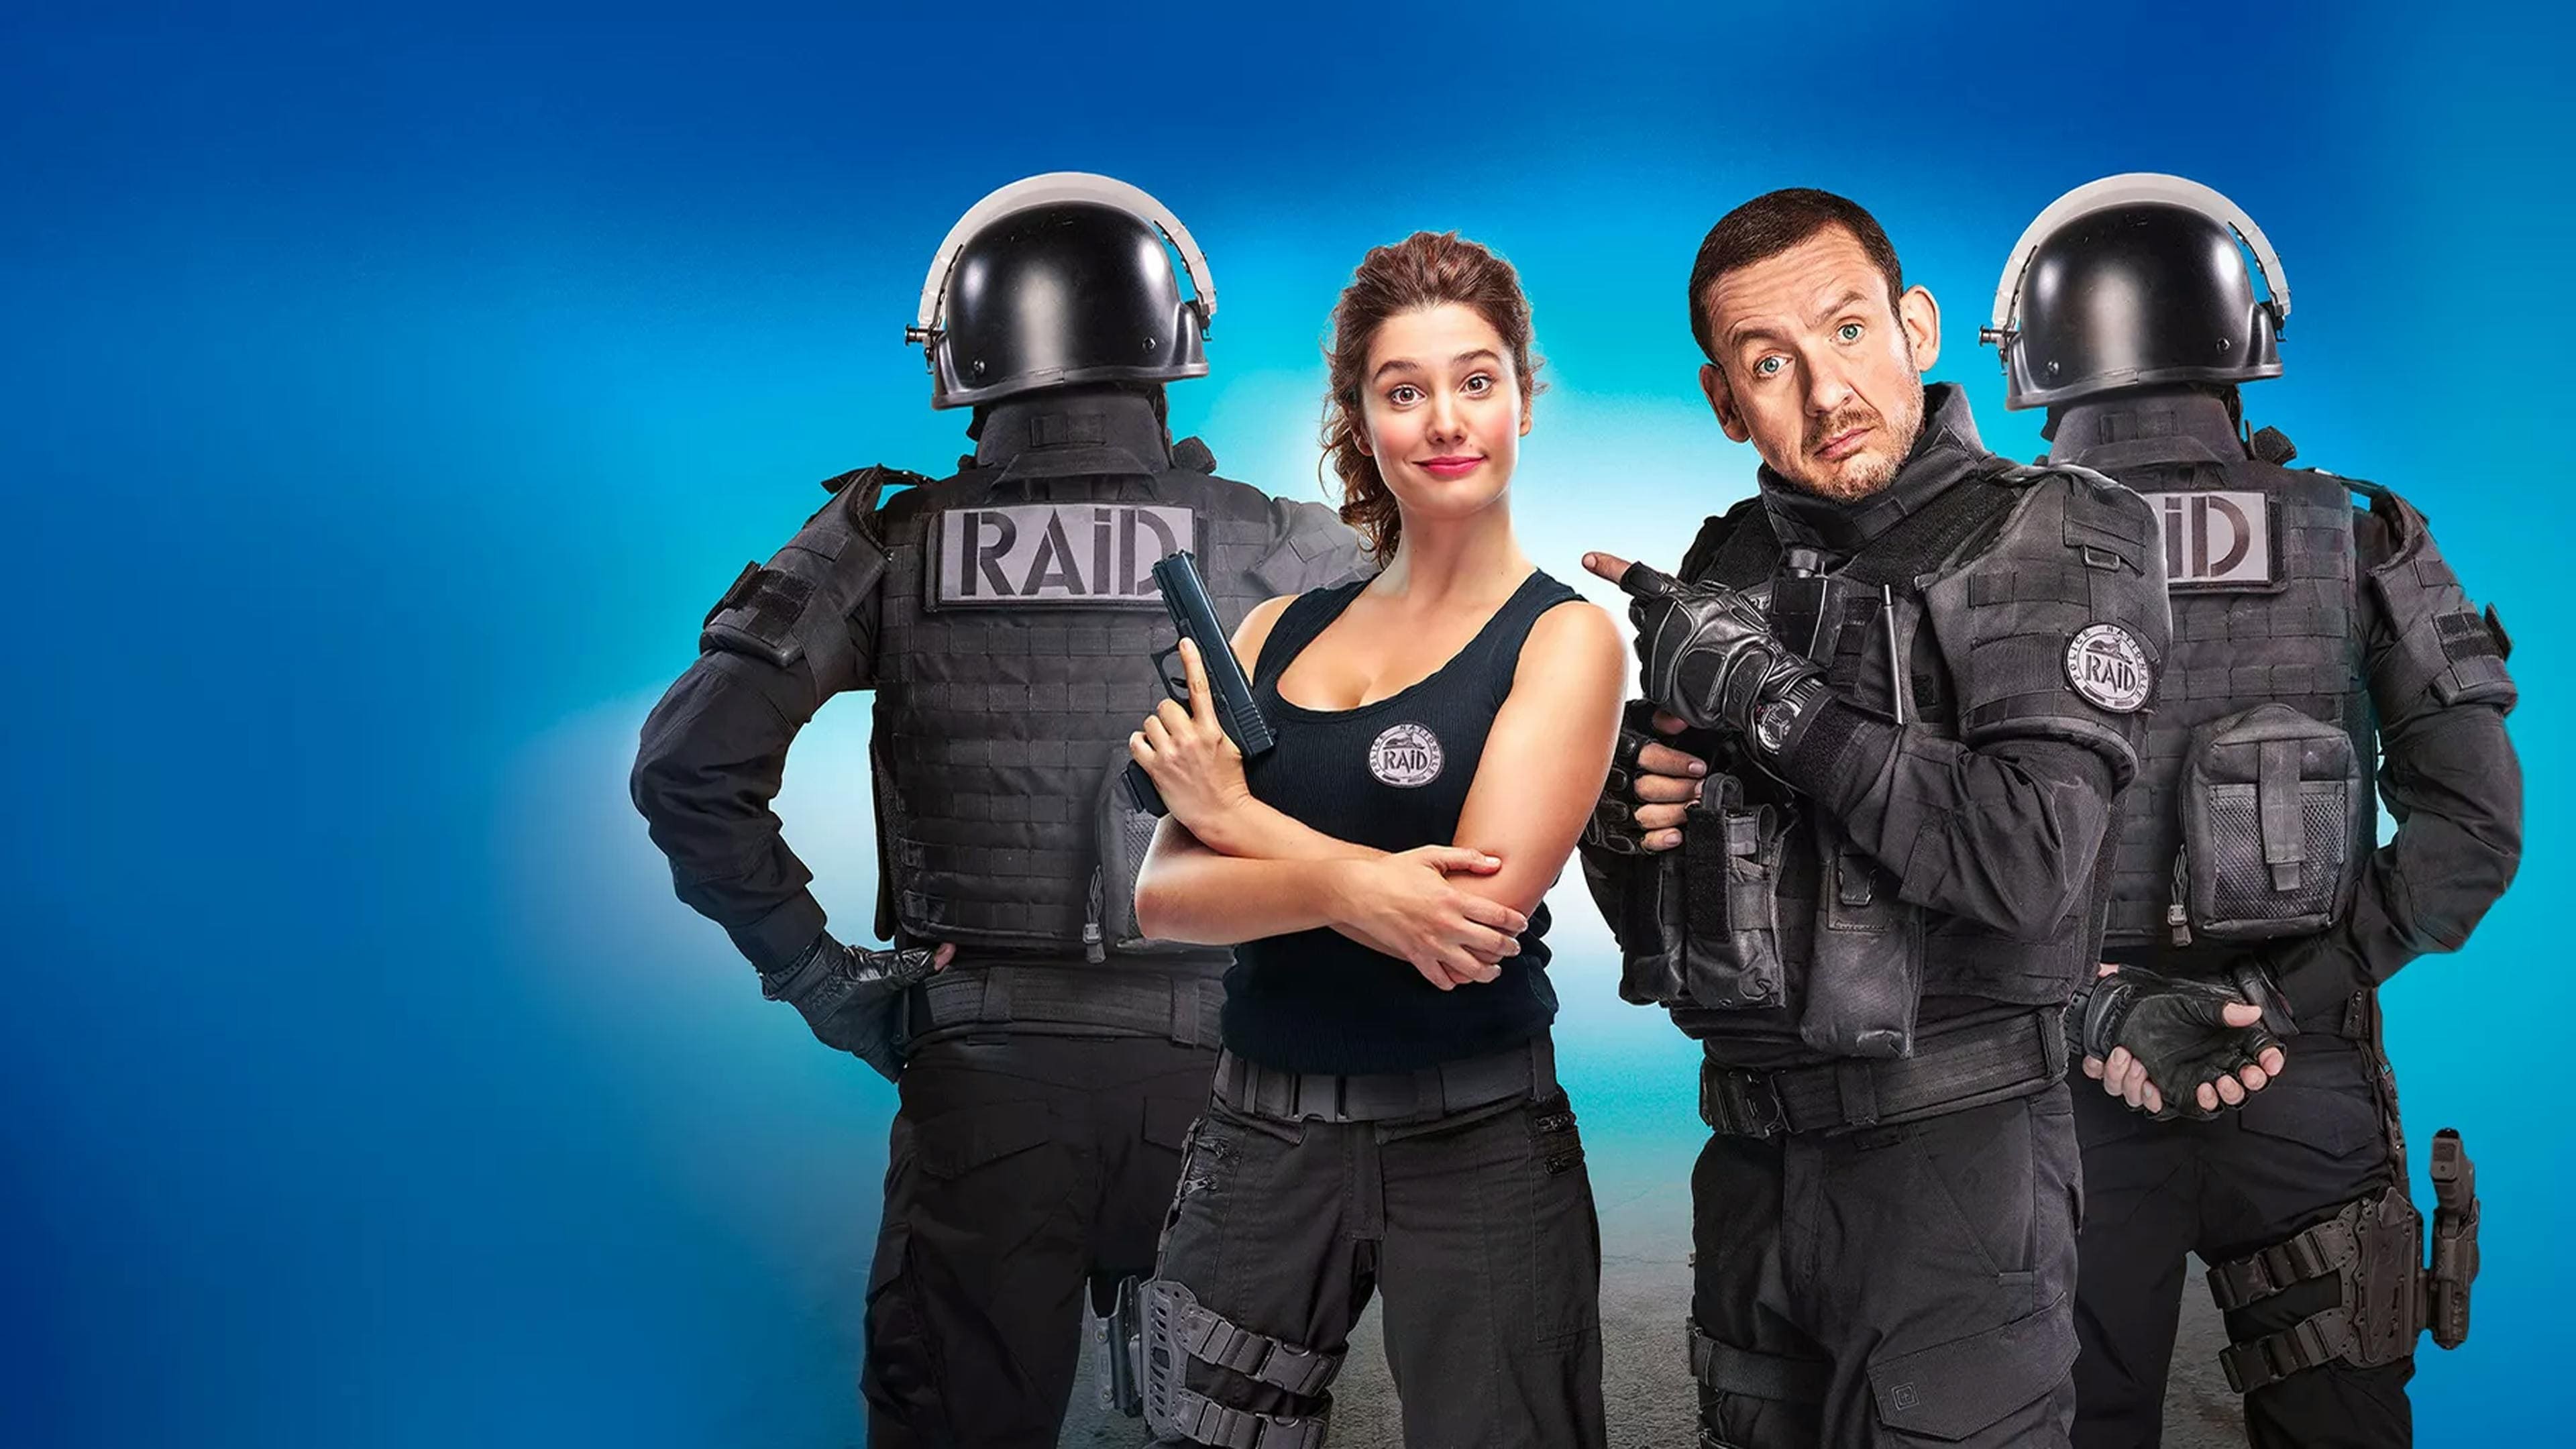 Raid - Una poliziotta fuori di testa